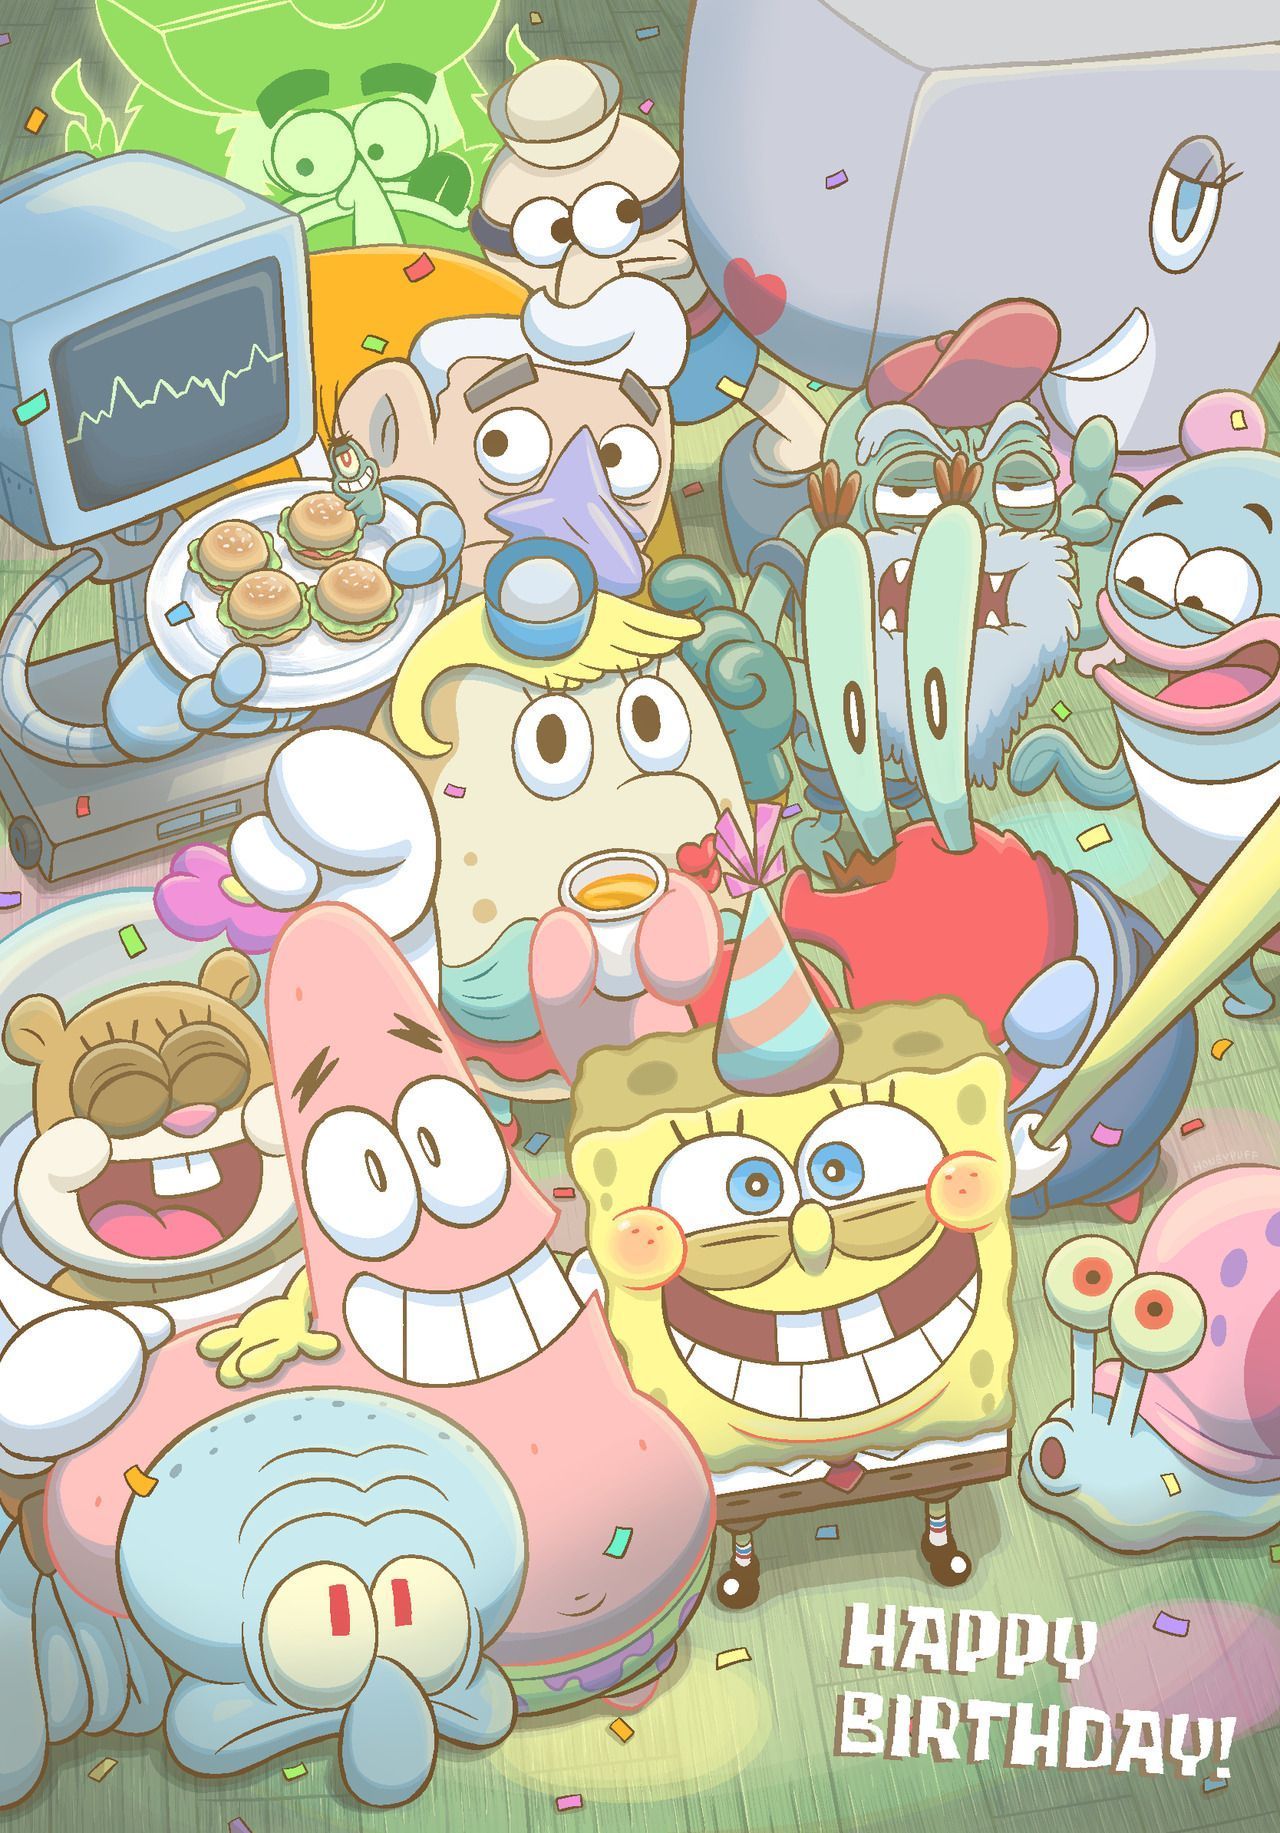 Rain maker. Spongebob wallpaper, Cute cartoon wallpaper, Cartoon wallpaper iphone